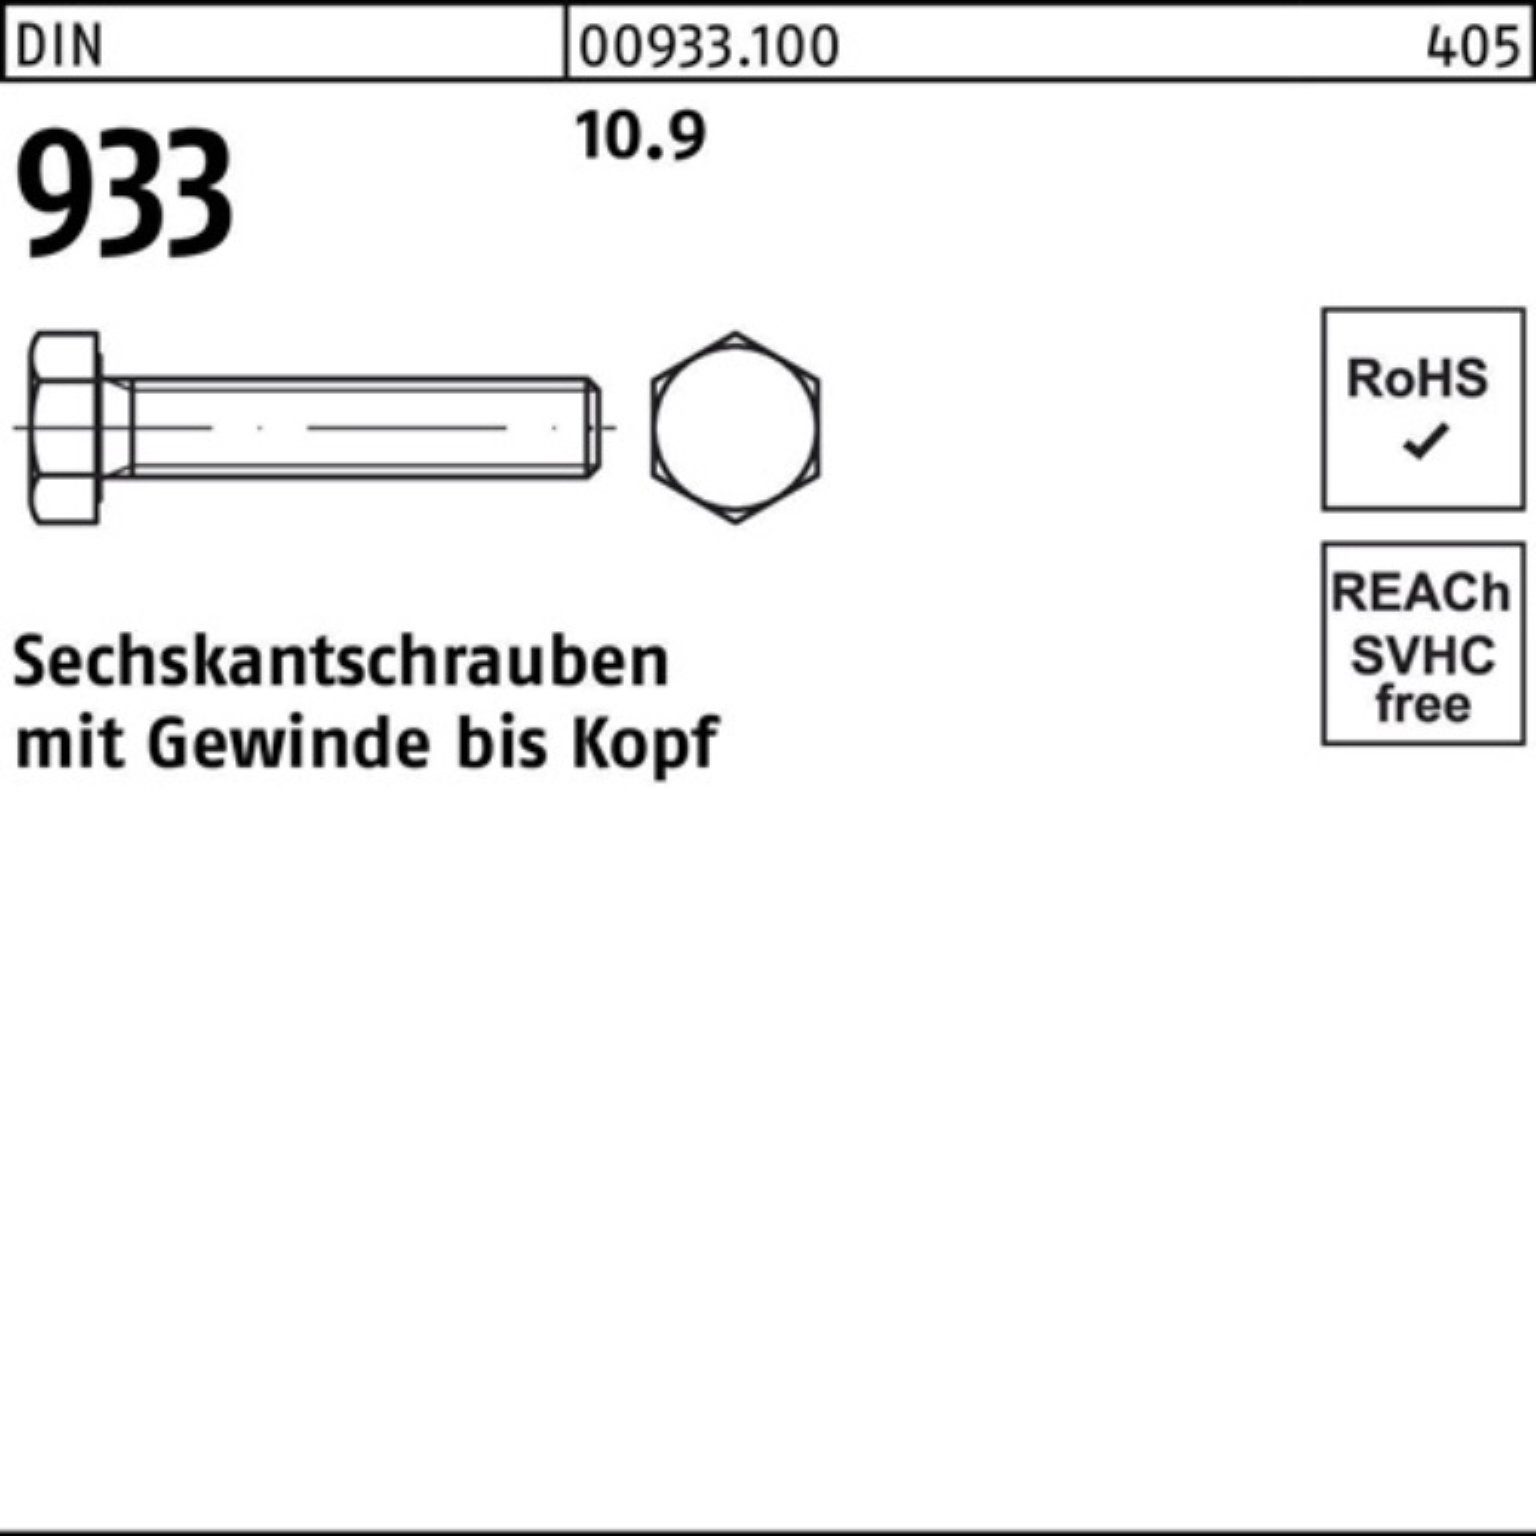 Reyher Sechskantschraube 100er Stück VG 933 1 10.9 933 Pack M24x DIN DIN Sechskantschraube 140